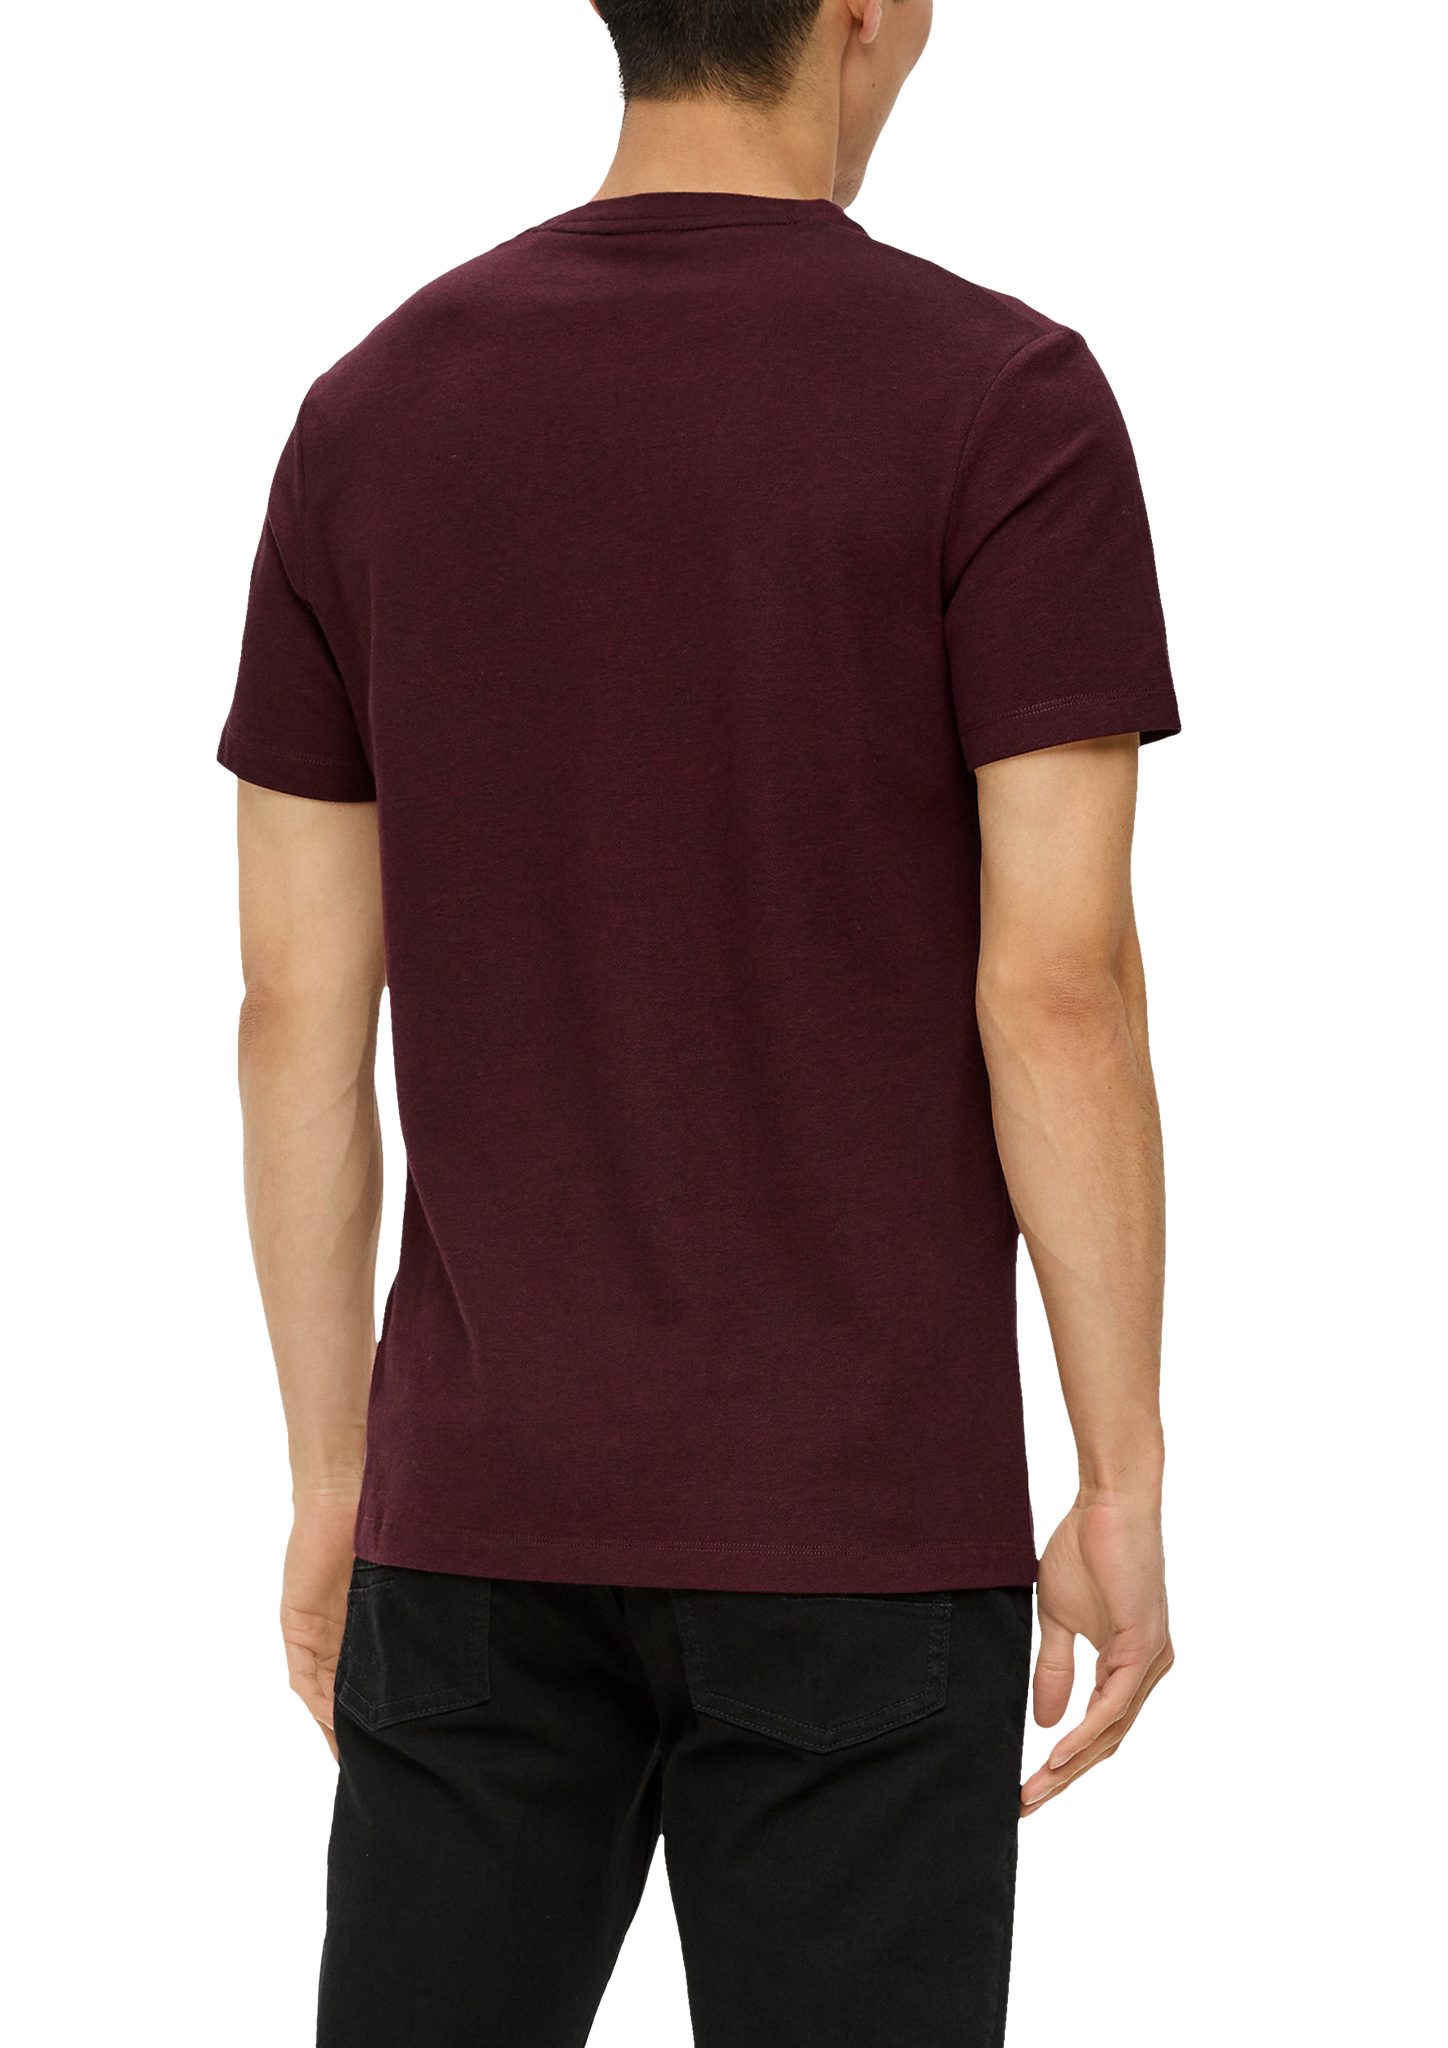 s.Oliver Kurzarmshirt T-Shirt mit Blende Piqué-Struktur bordeaux